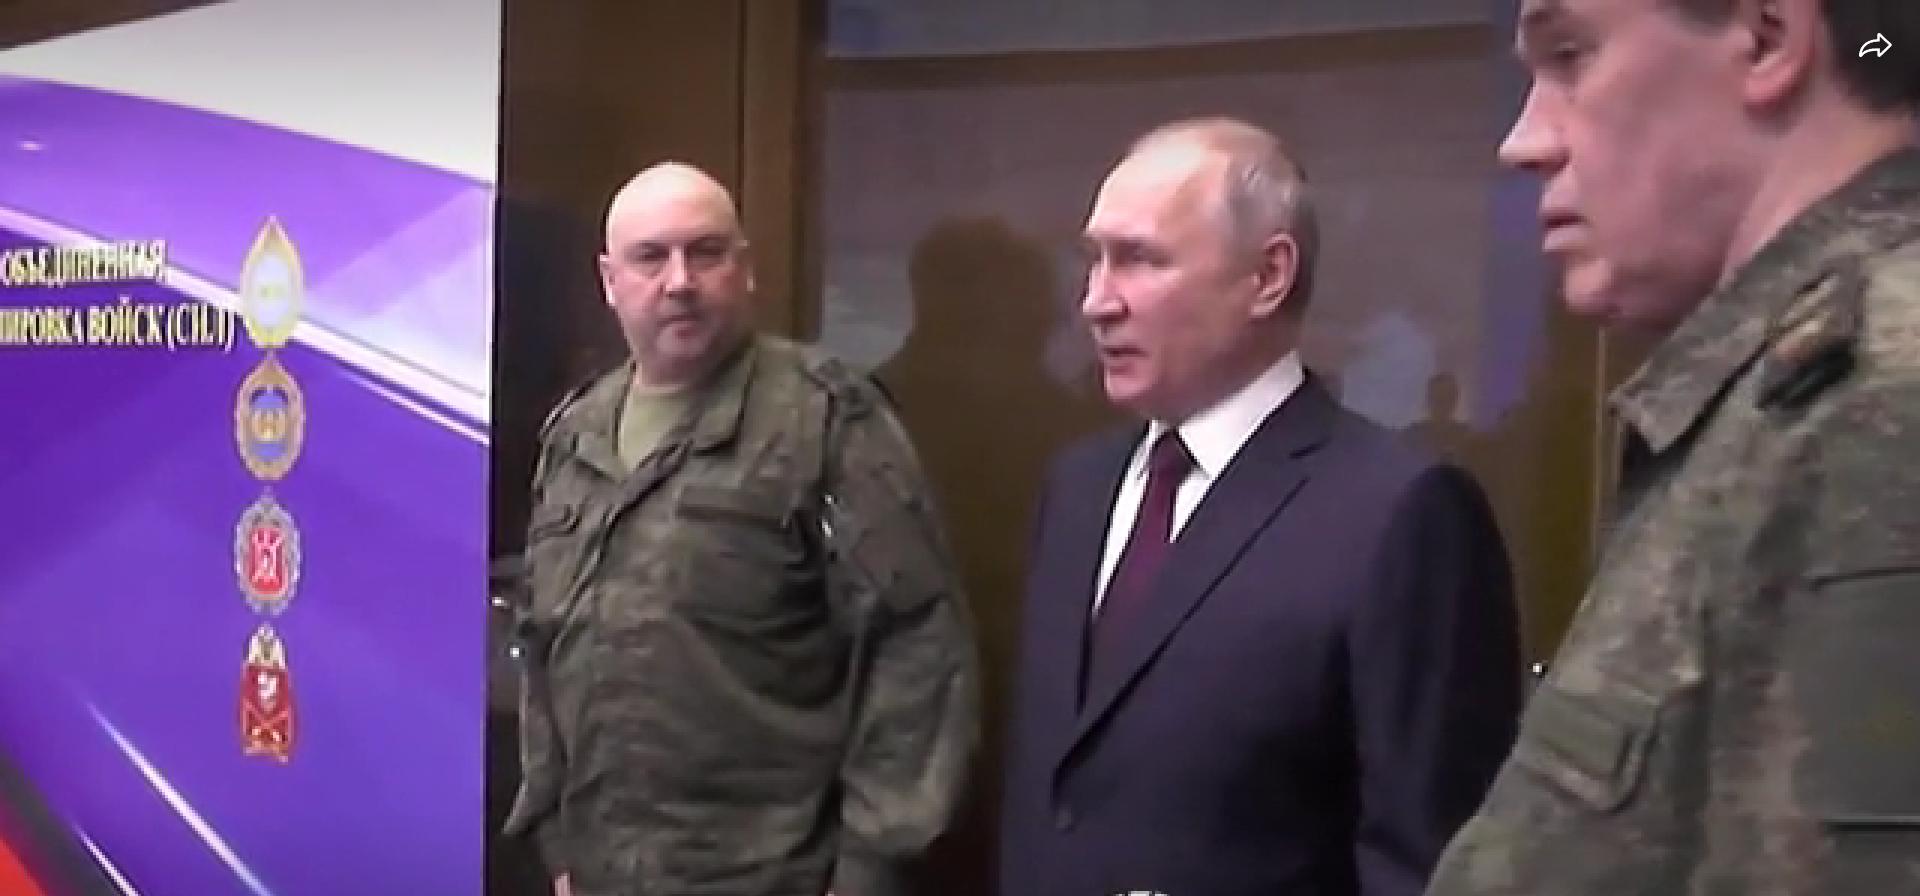 Putin w garniturze, miedzy wojskowymi